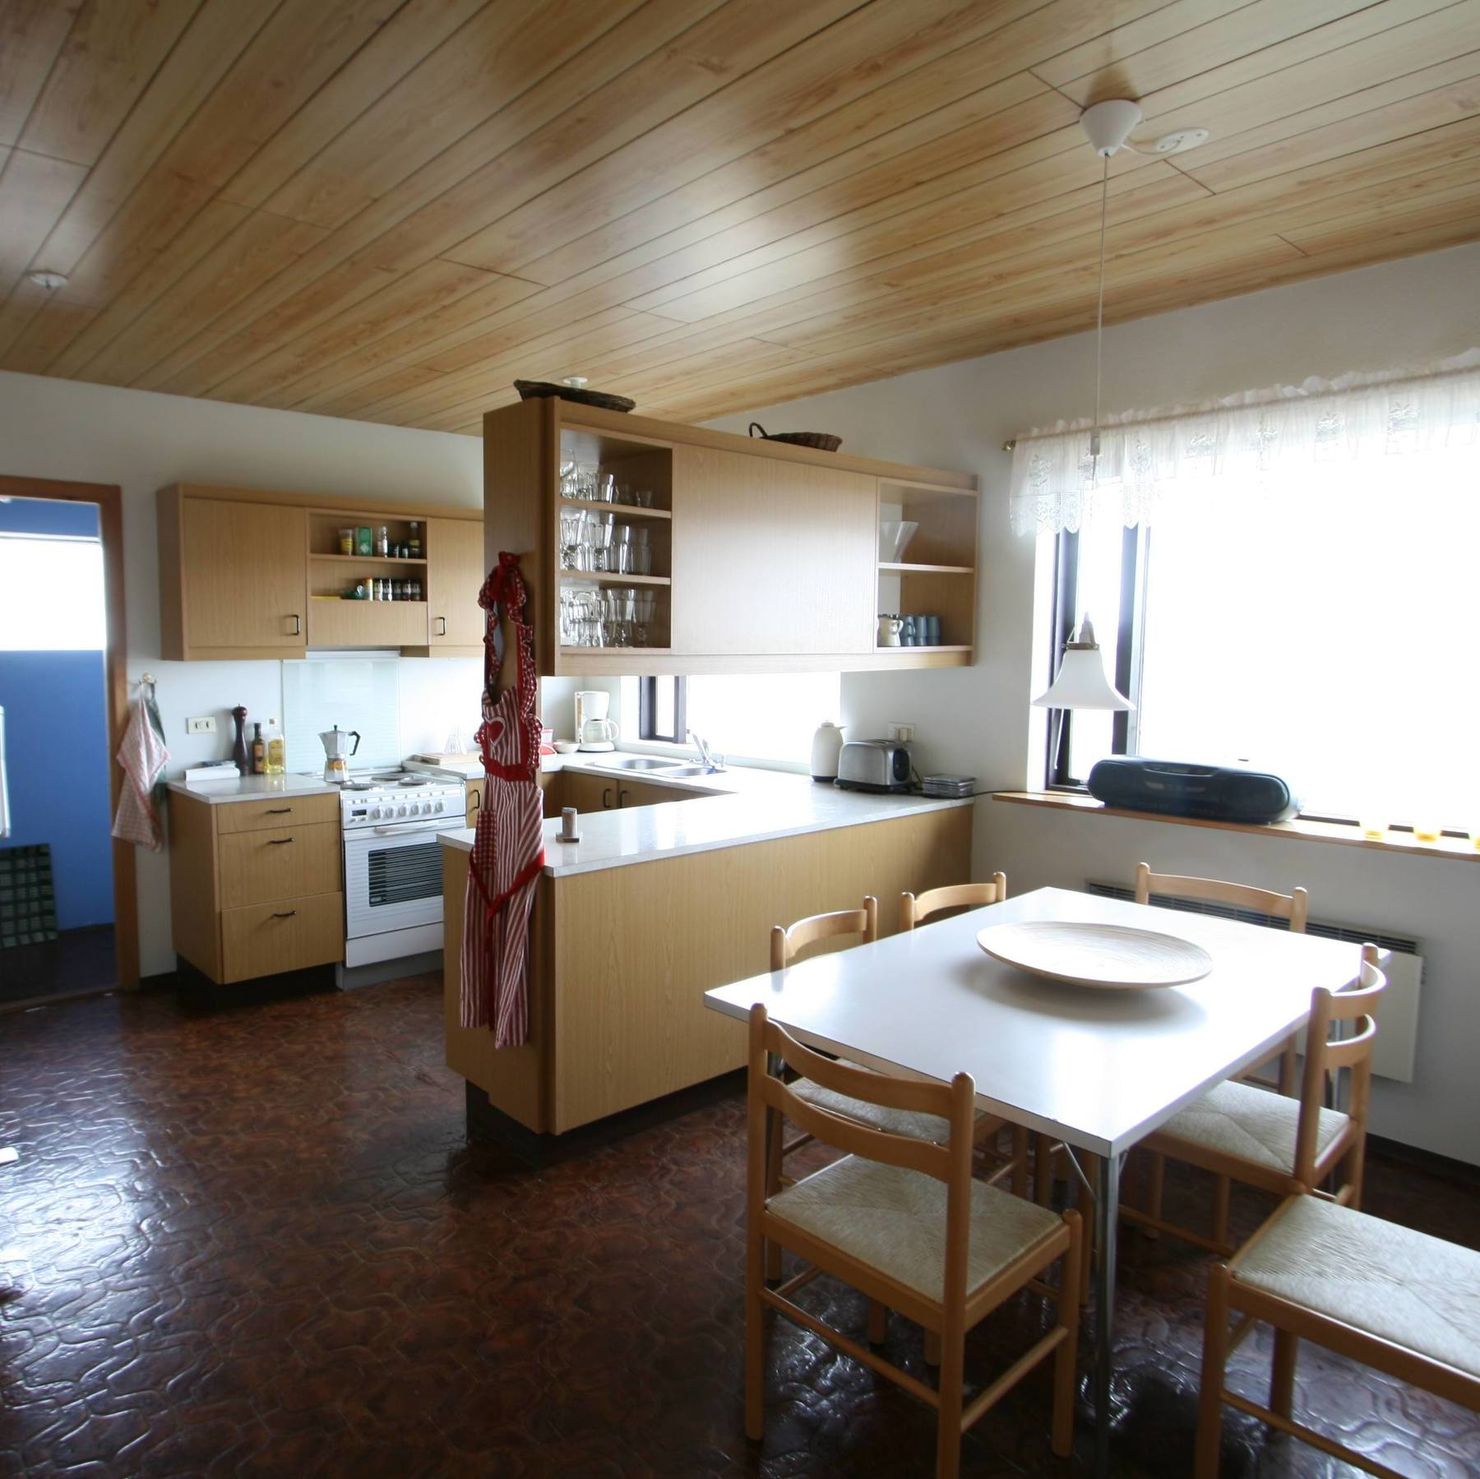 Die Küche des Ferienhauses mit Esstisch für bis zu 6 Personen